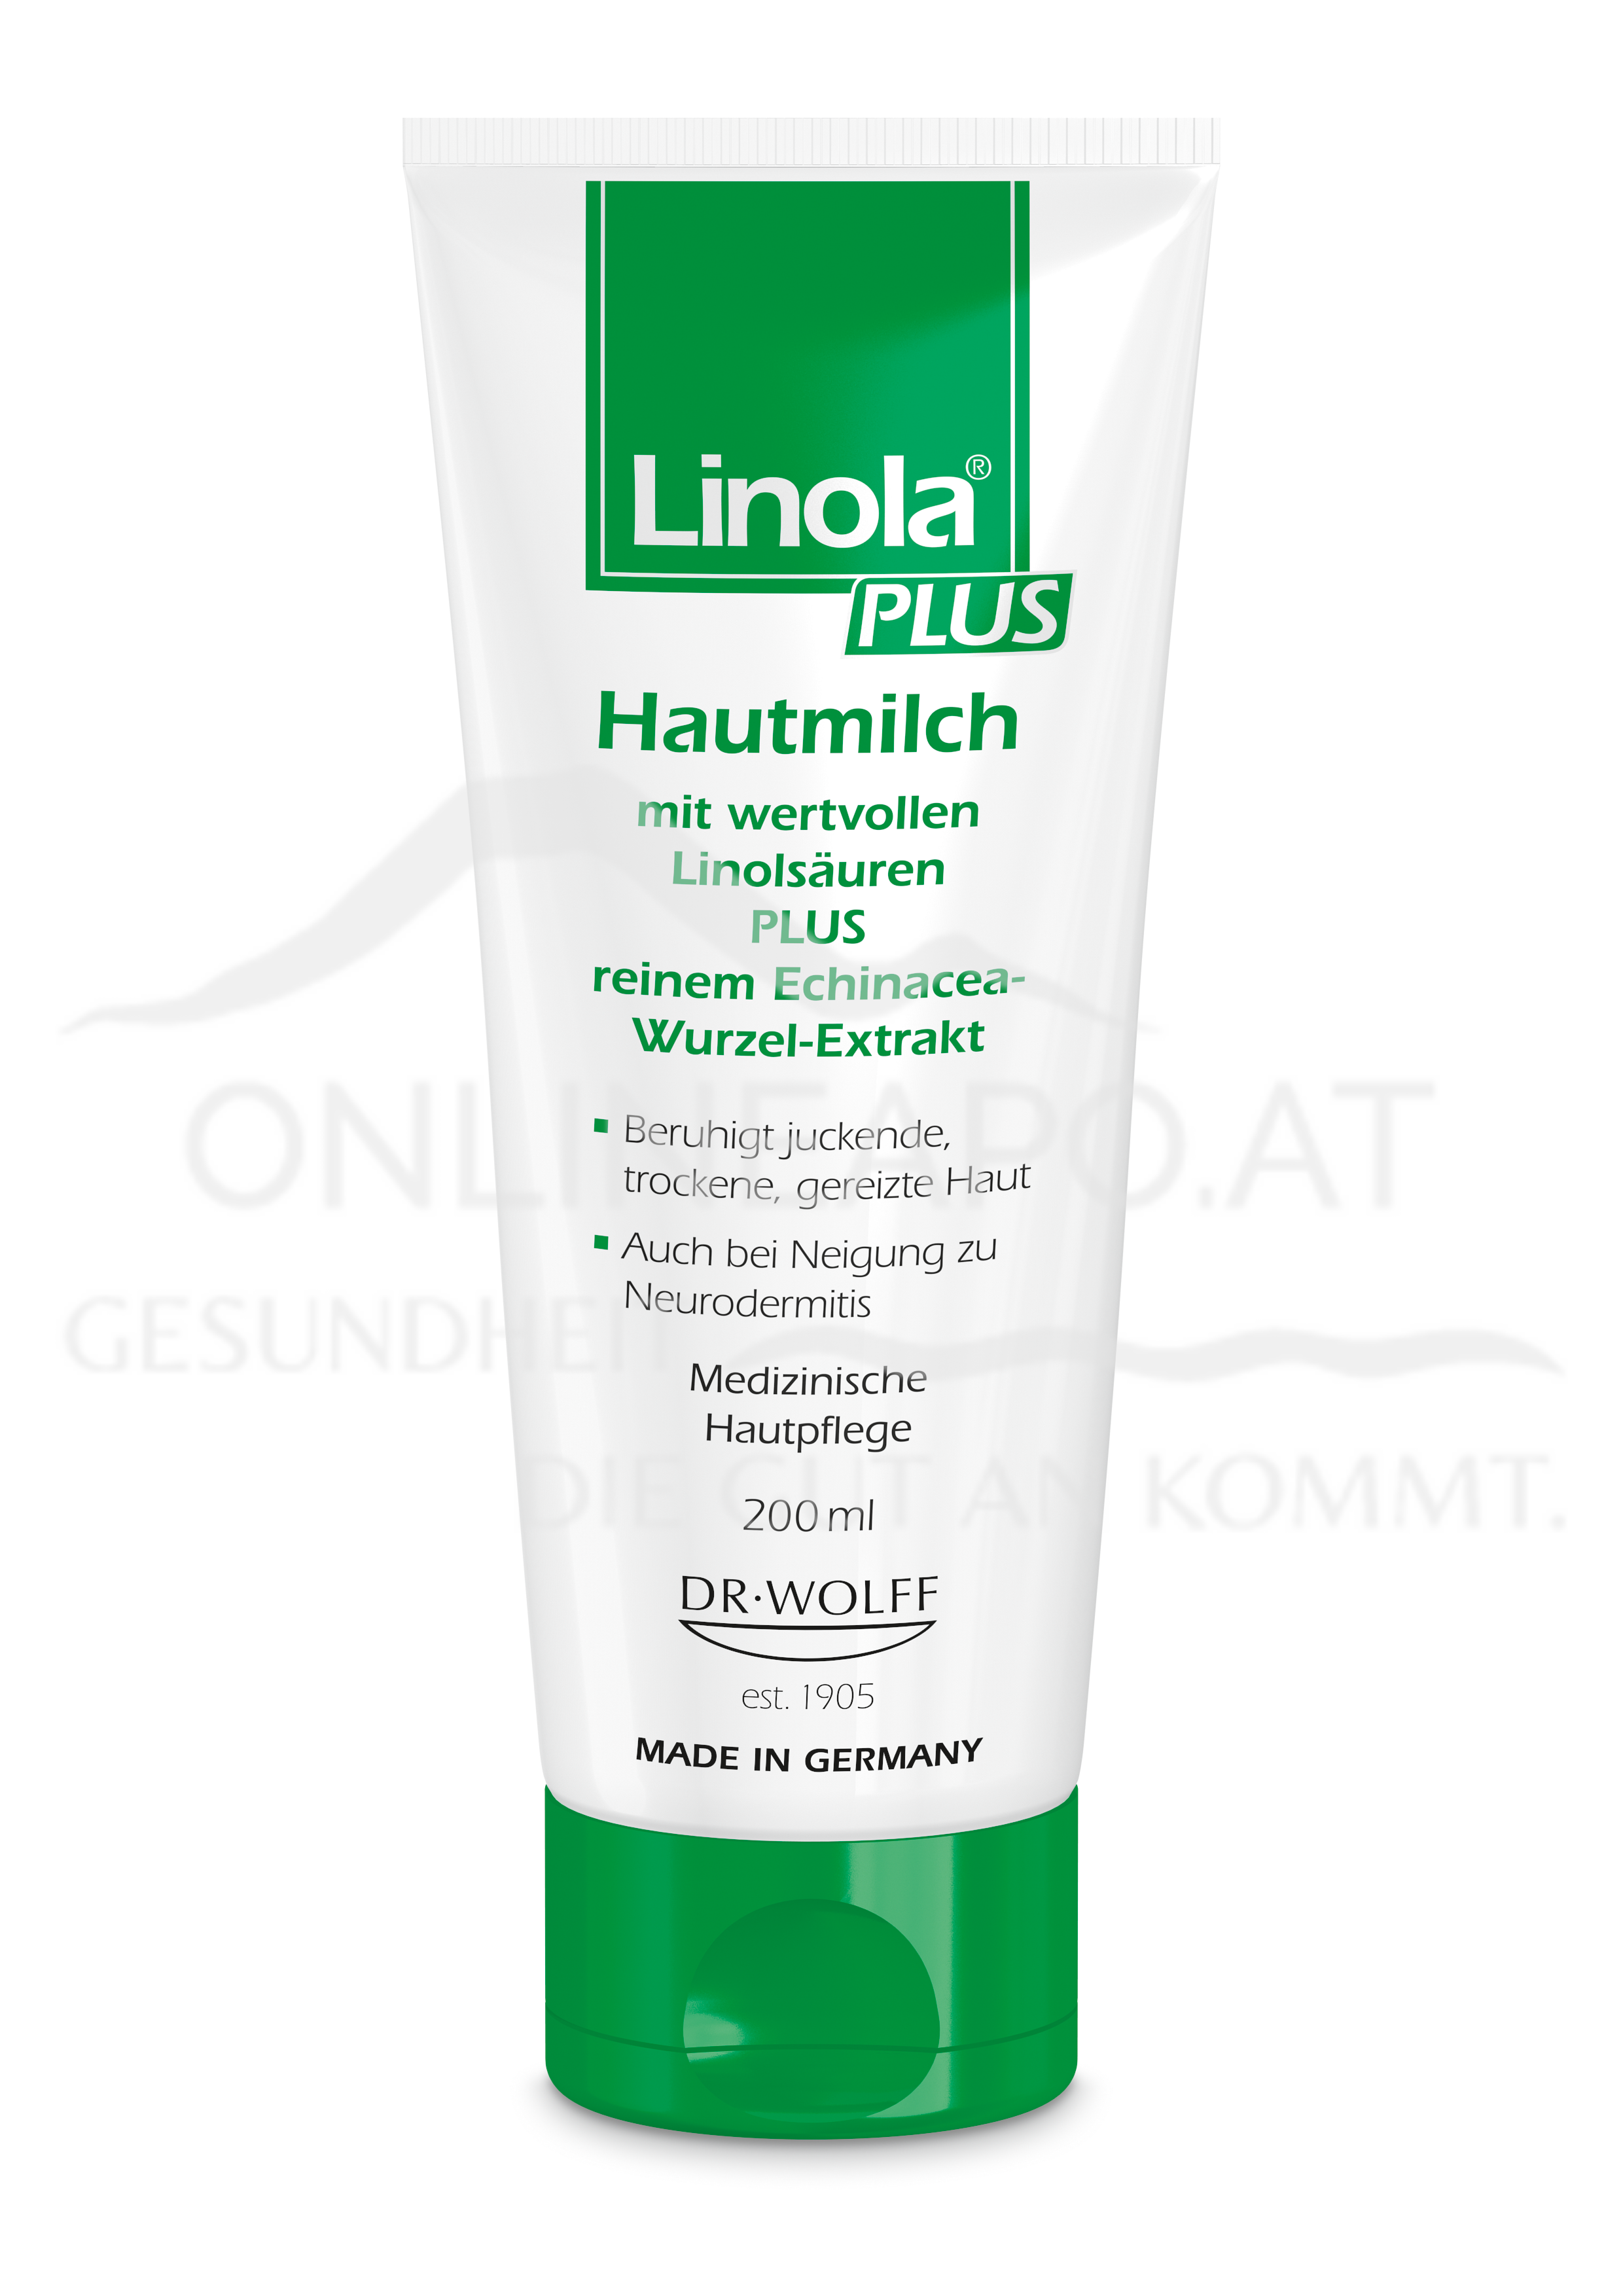 Linola® PLUS Hautmilch